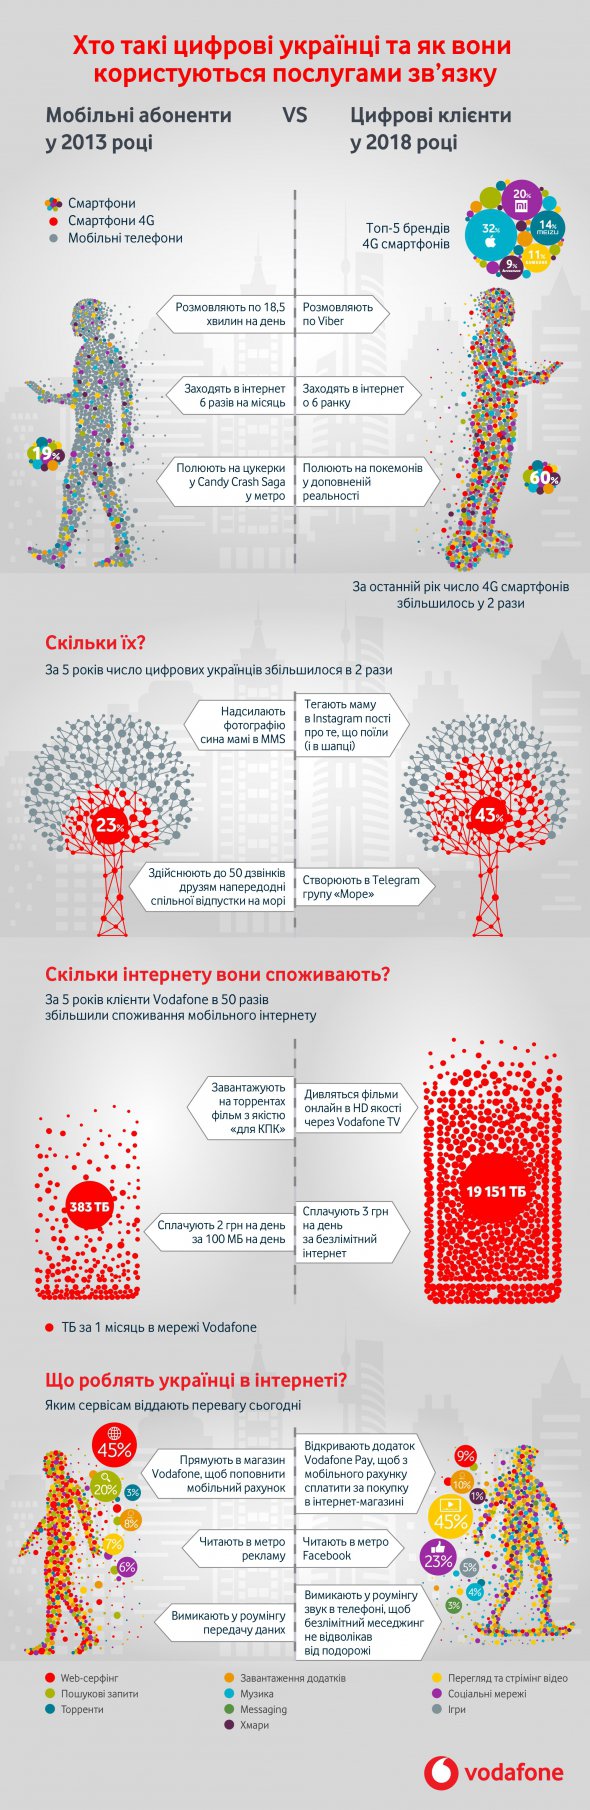 Інфографіка від Vodafone Україна: чим користуються, що роблять в інтернеті, з ким спілкуються і у що грають українці